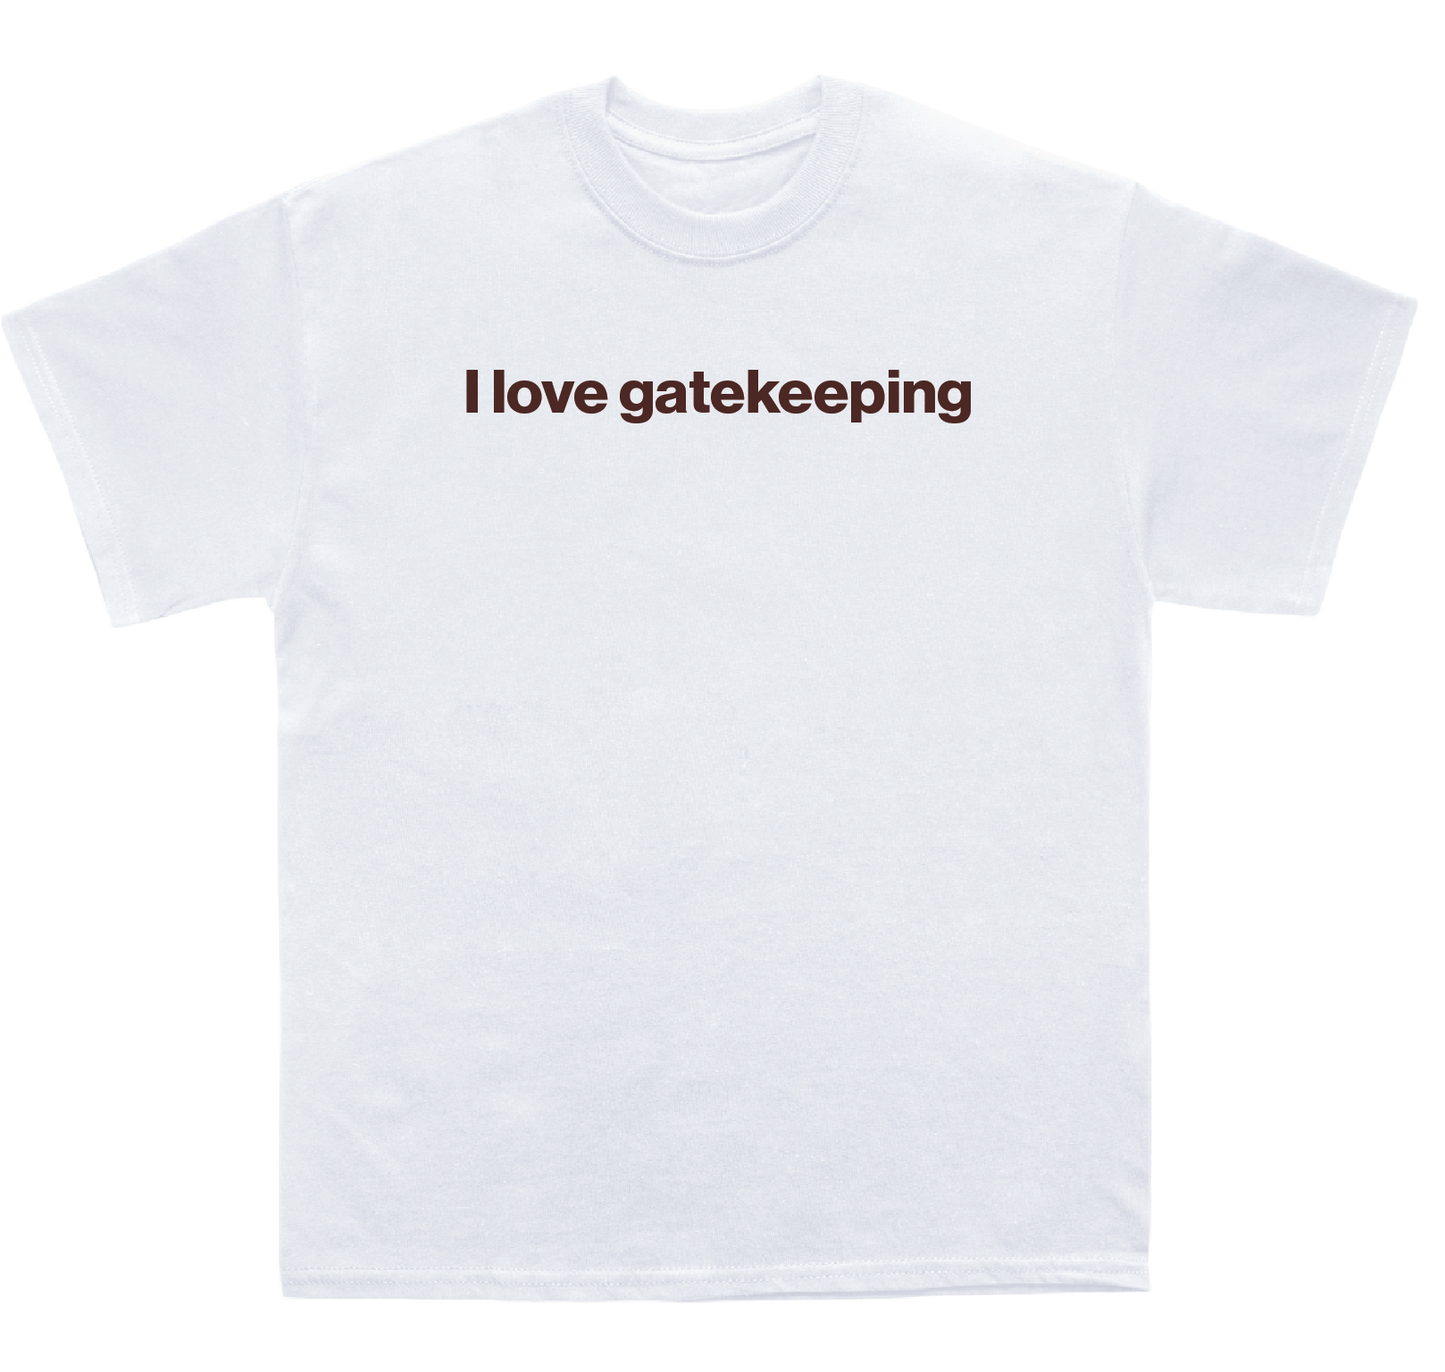 I love gatekeeping shirt